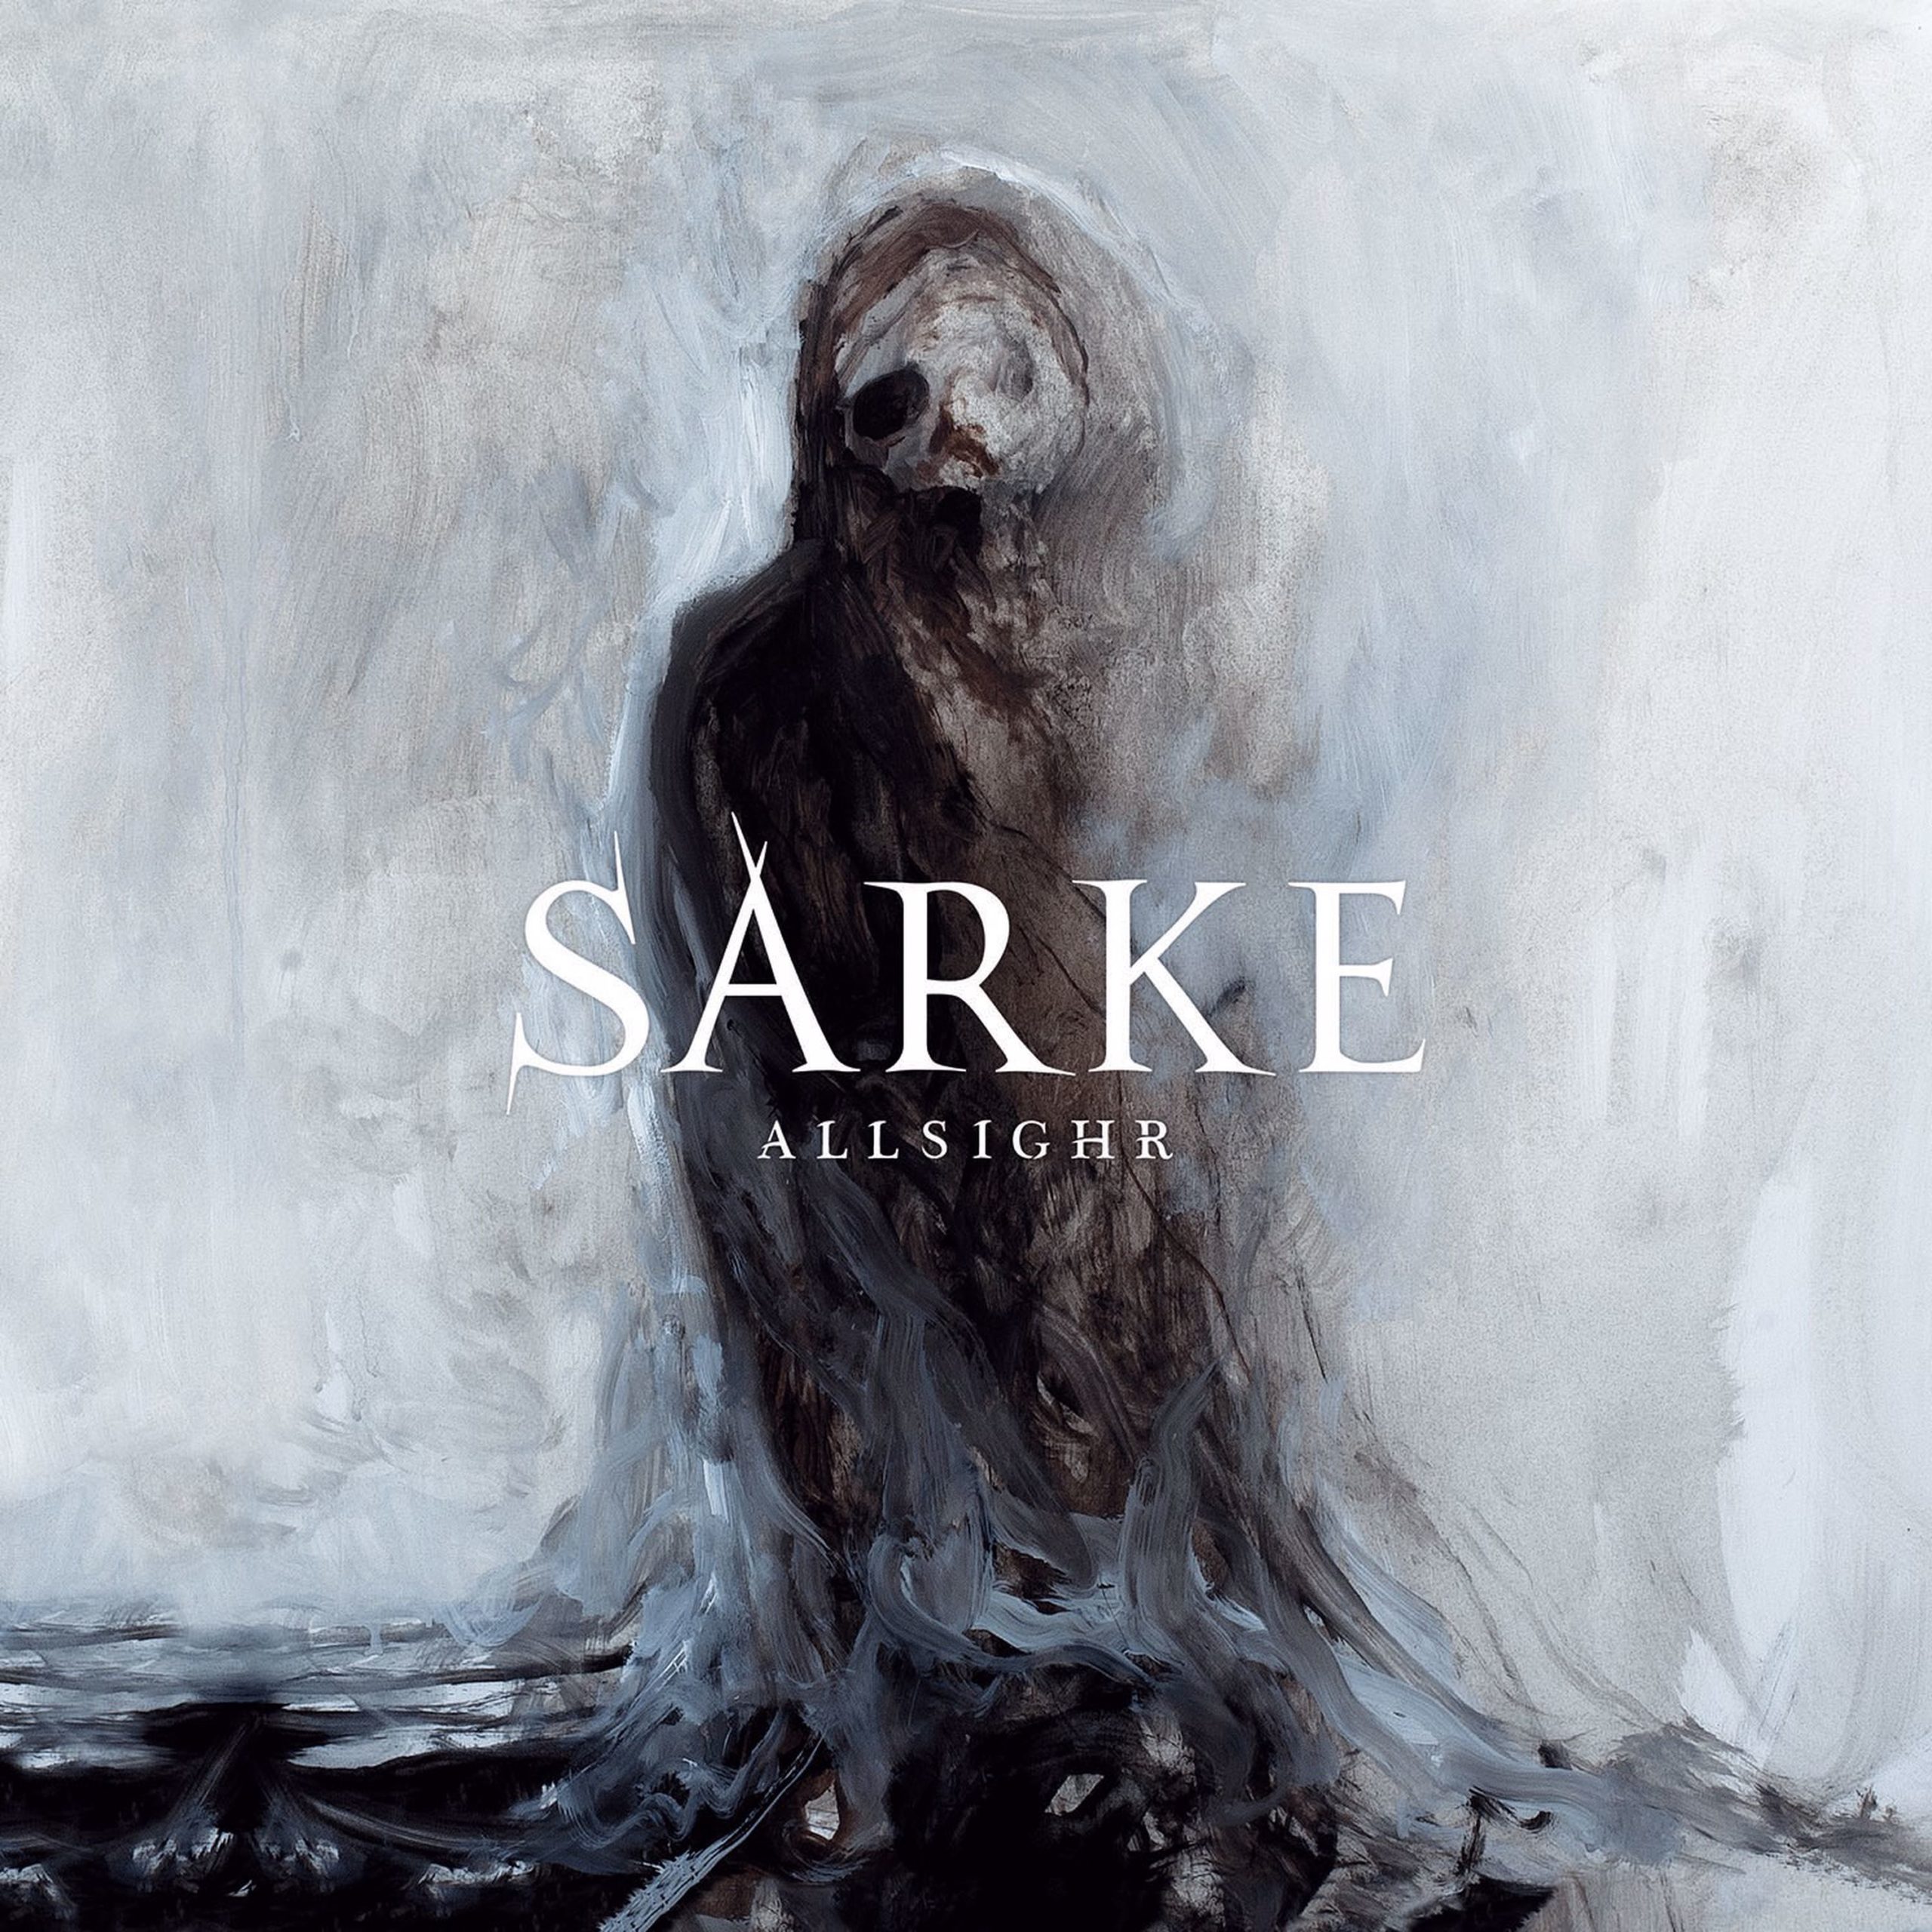 SARKE ANNOUNCE NEW ALBUM "ALLSIGHR" - Soulseller Records